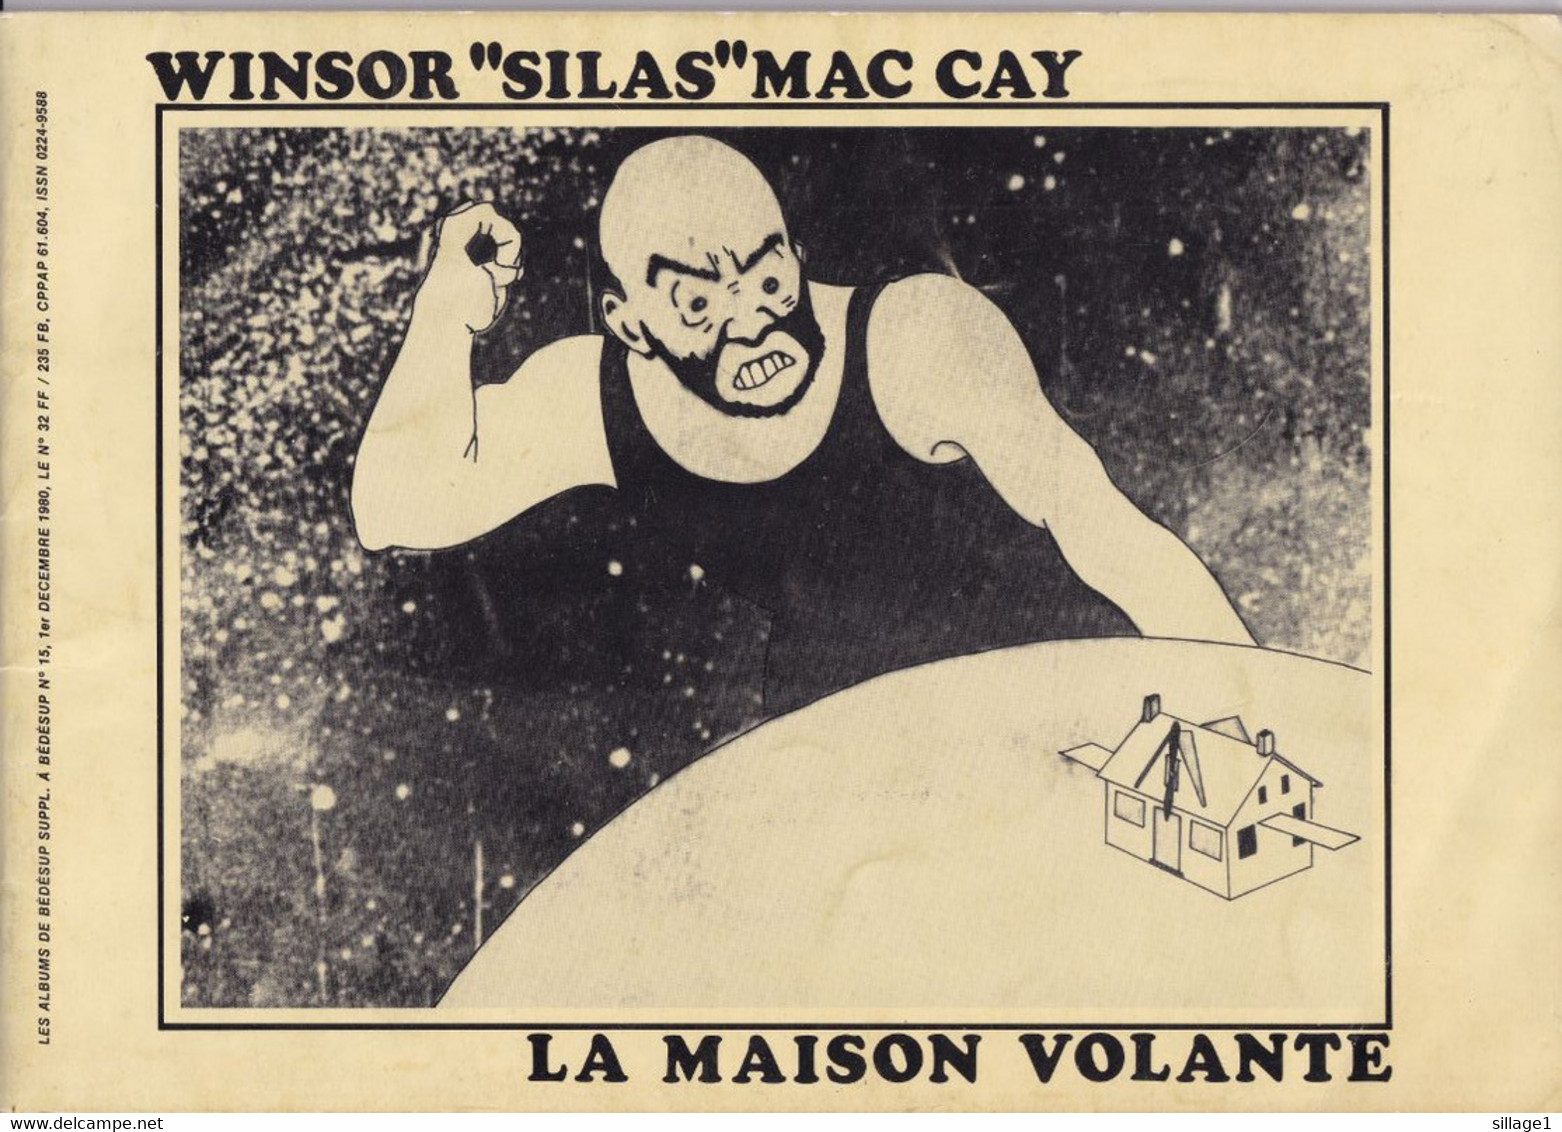 Winsor "Silas" Mac Cay - La Maison Volante - Exemplaire Numéroté 307/3500 Bédésup 1980 - Tirage De Tête - Rare - Prime Copie